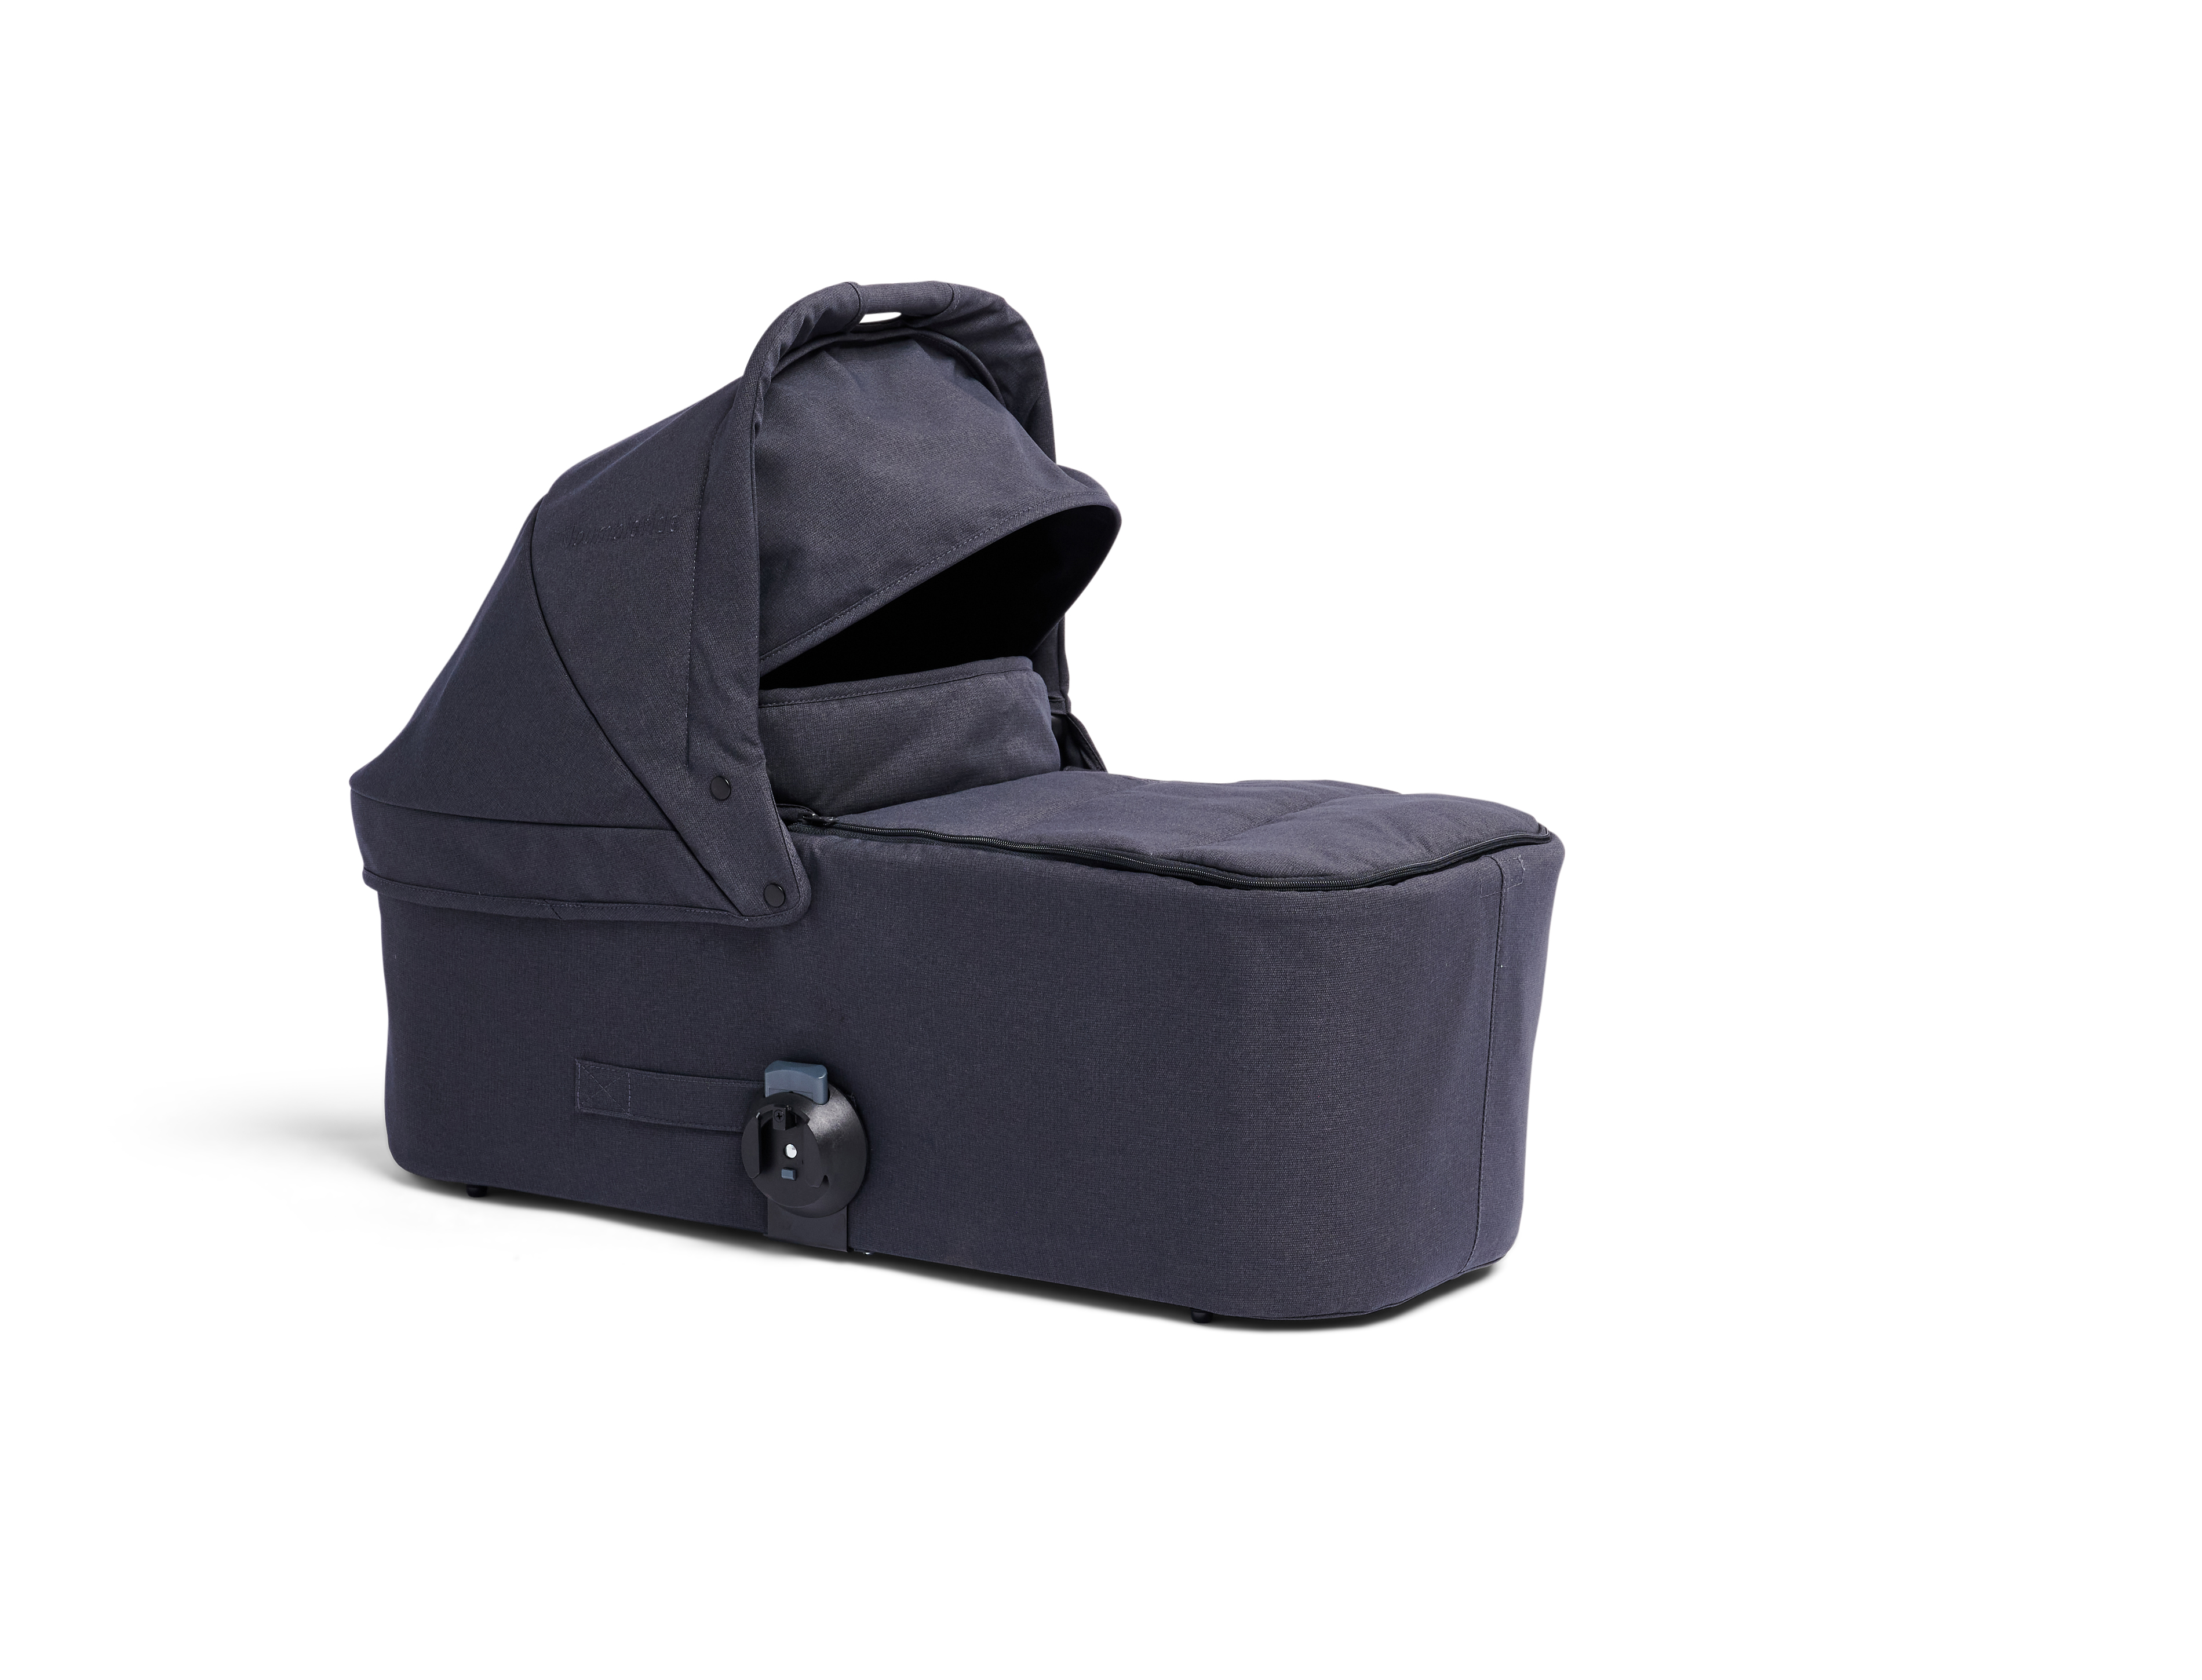 Люлька Bumbleride Bassinet для Era, Indie, Speed / Dusk Premium люлька bassinet для indie twin dusk premium bumbleride